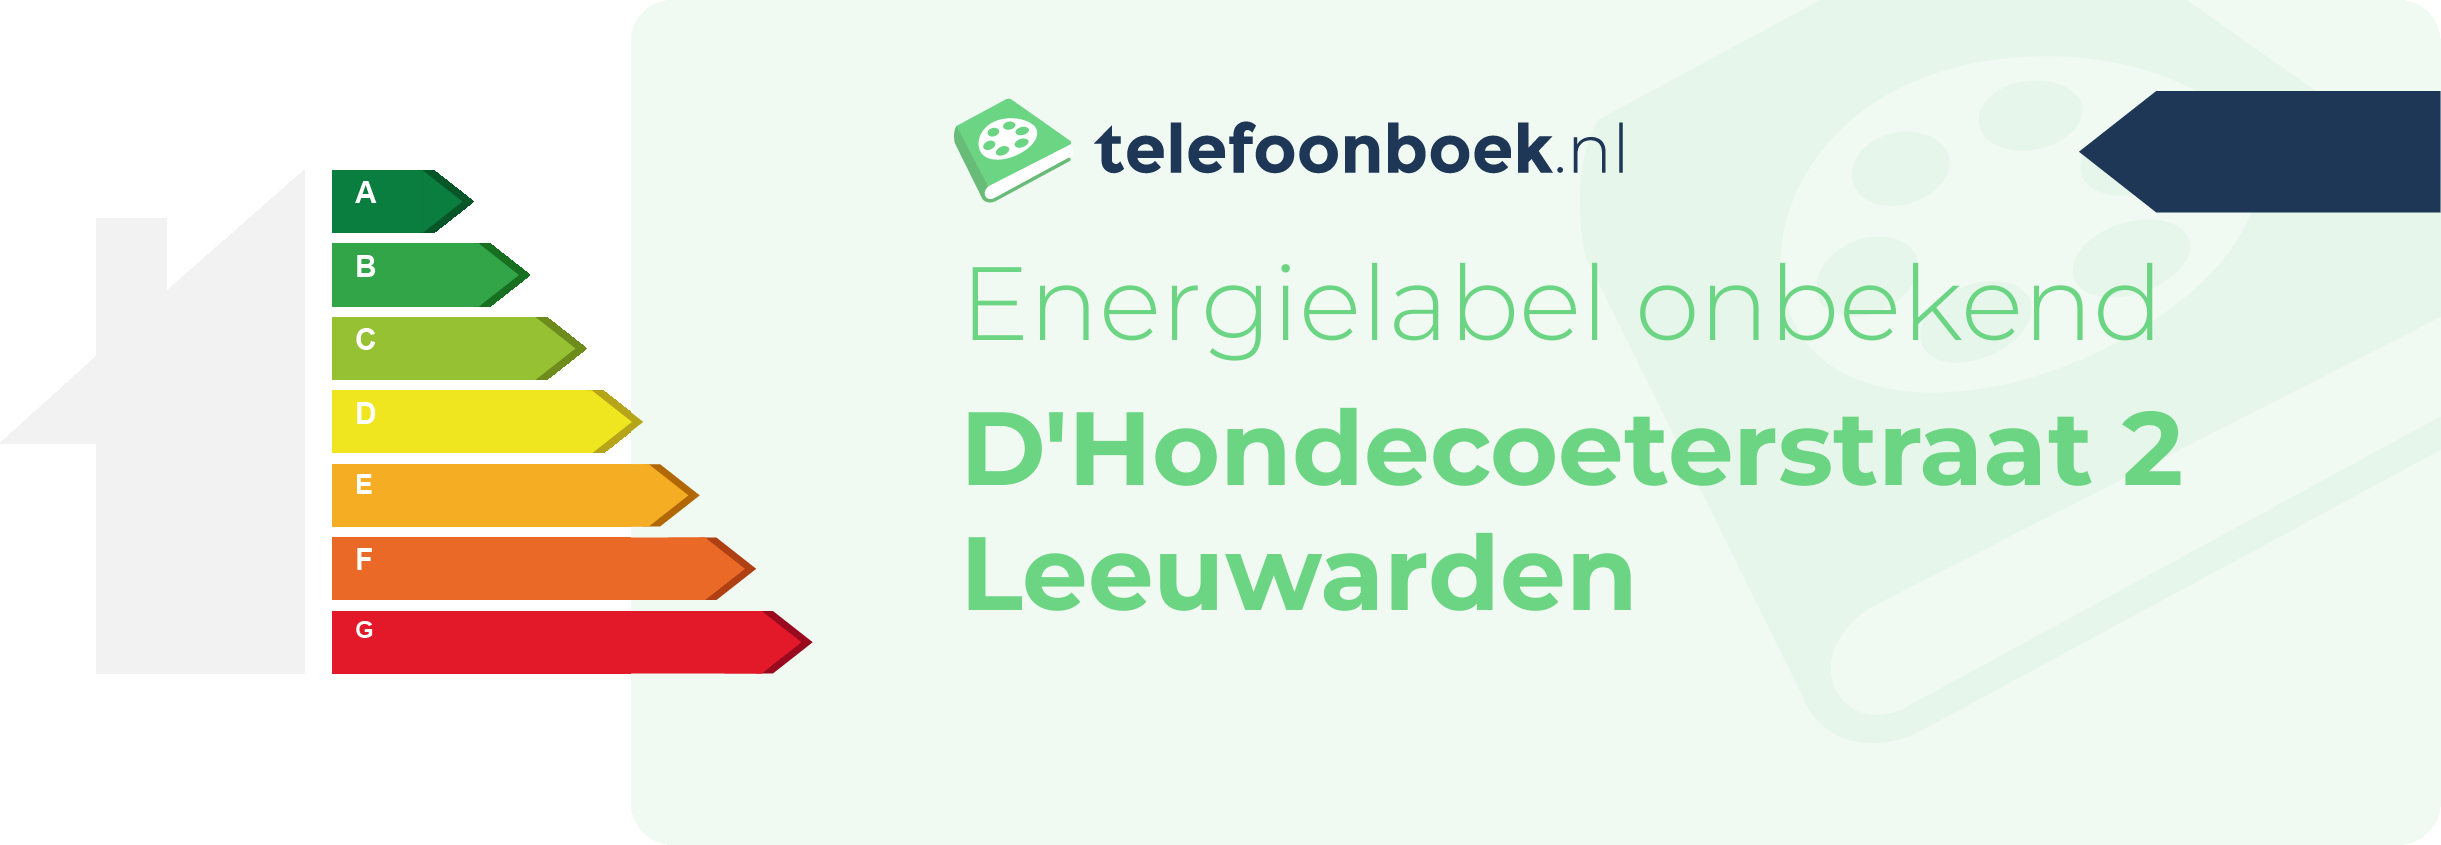 Energielabel D'Hondecoeterstraat 2 Leeuwarden